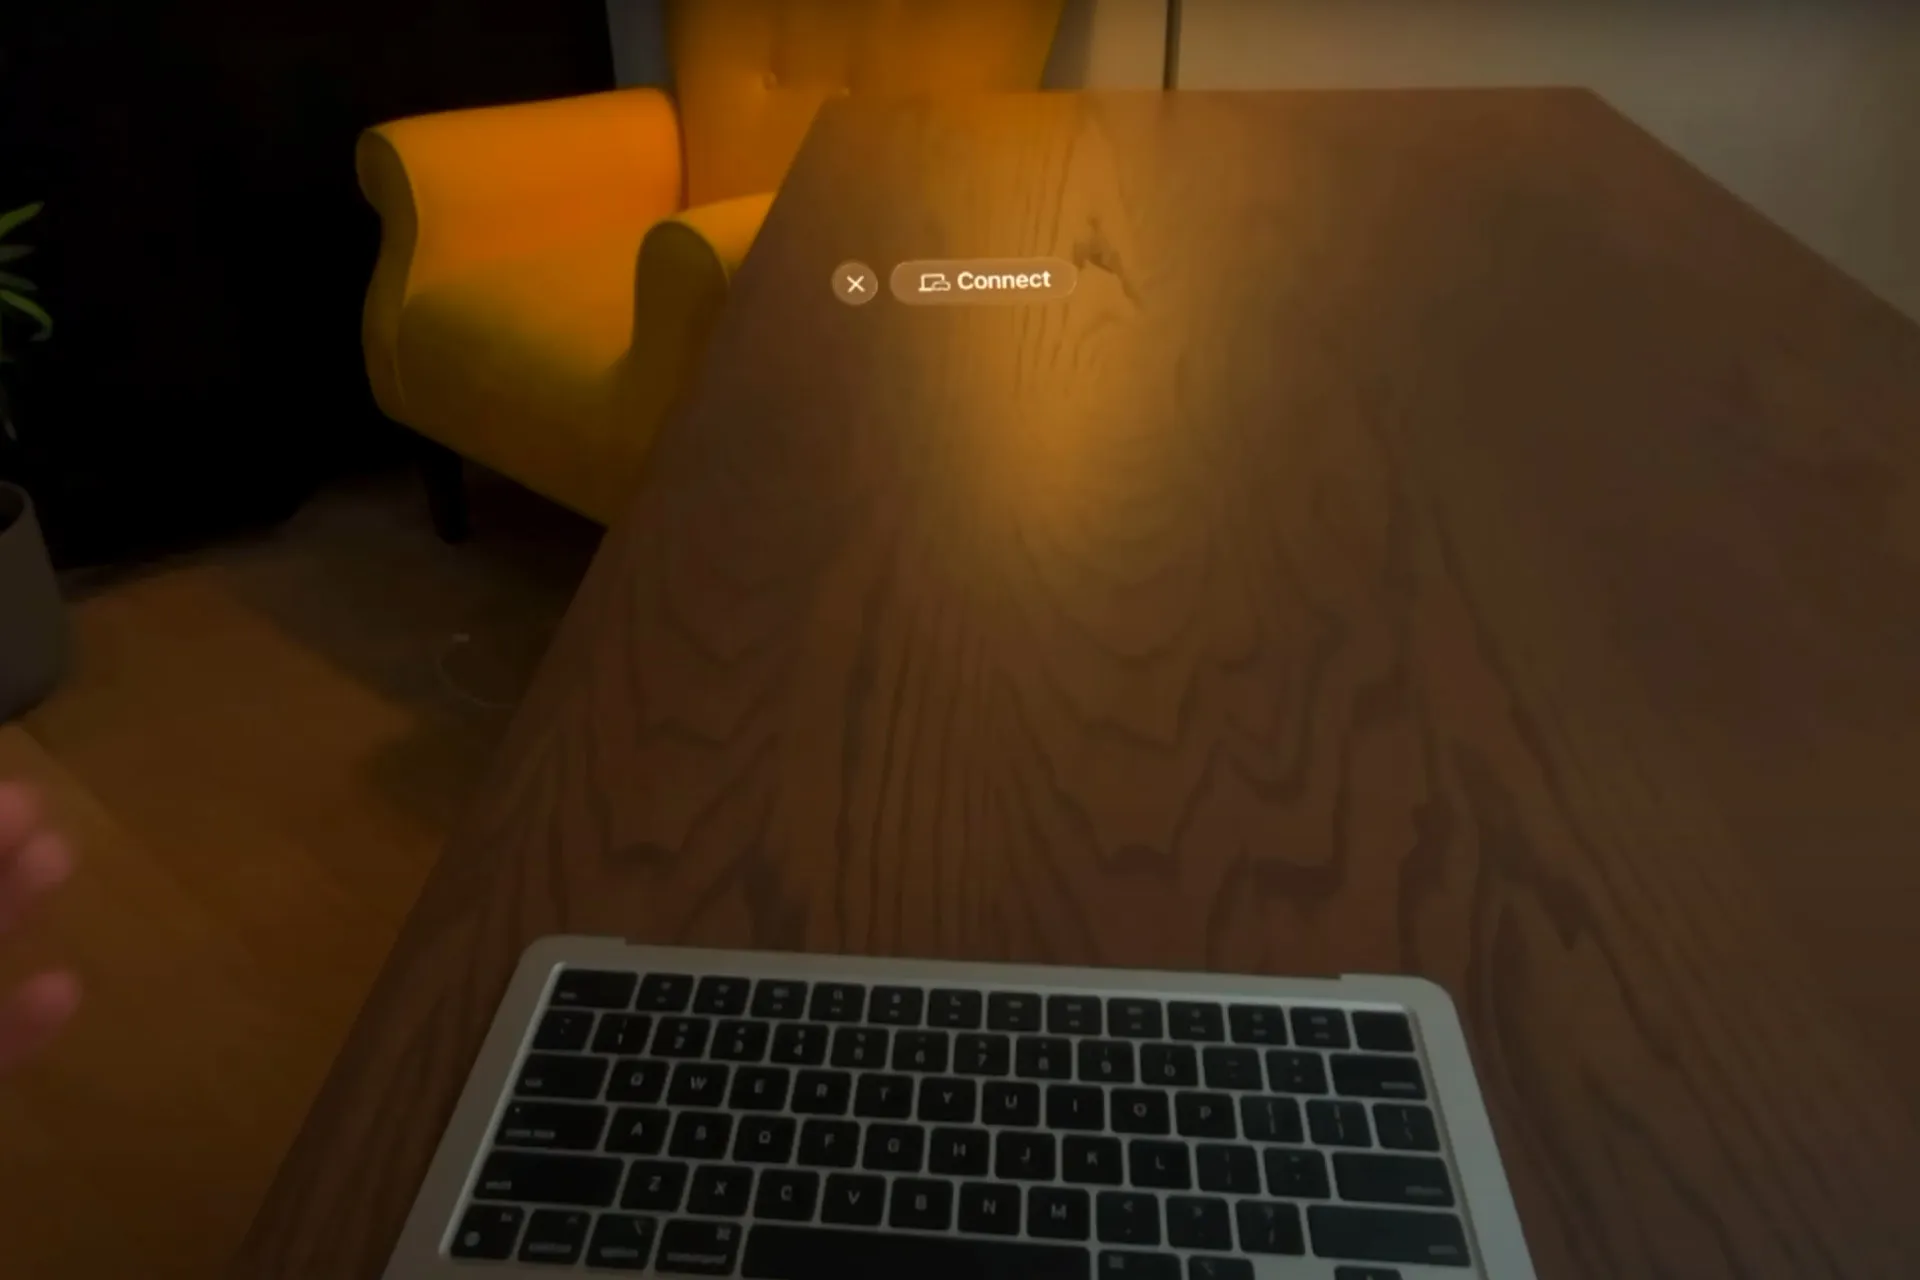 Il Vision Pro riconosce il MacBook e offre di collegarsi, anche se manca uno schermo.